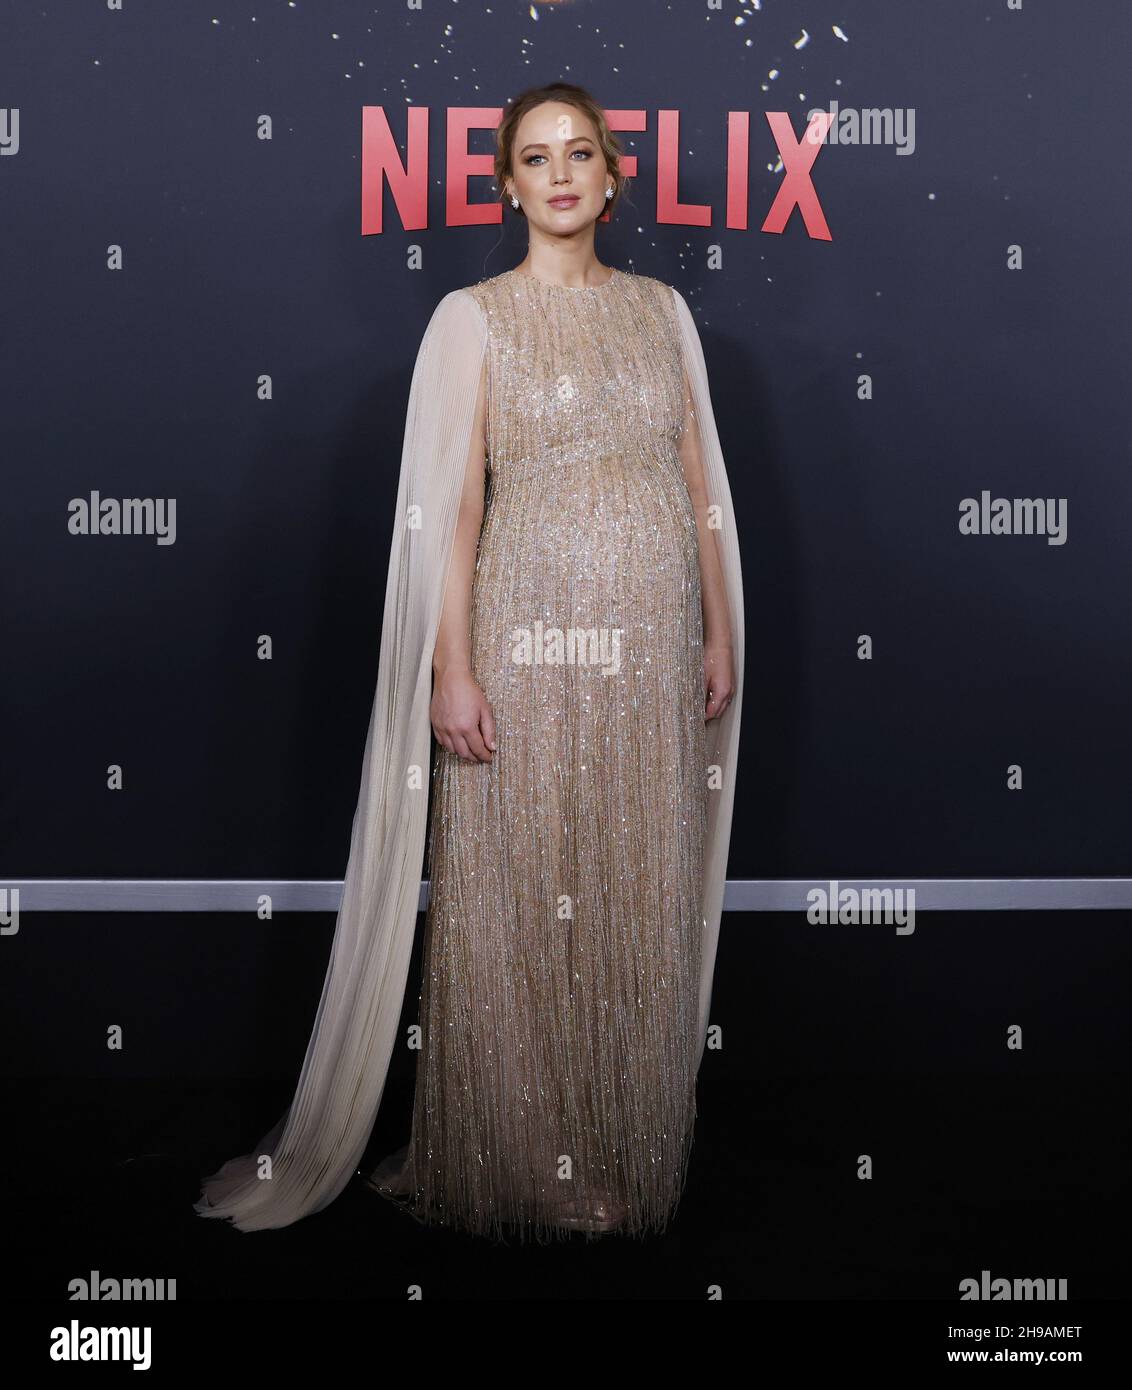 New York, Usa. 05th Dez 2021. Jennifer Lawrence kommt auf dem roten Teppich bei der Weltpremiere von Netflix's "Don't Look Up" am Sonntag, dem 05. Dezember 2021 in New York City an. Foto von John Angelillo/UPI Credit: UPI/Alamy Live News Stockfoto